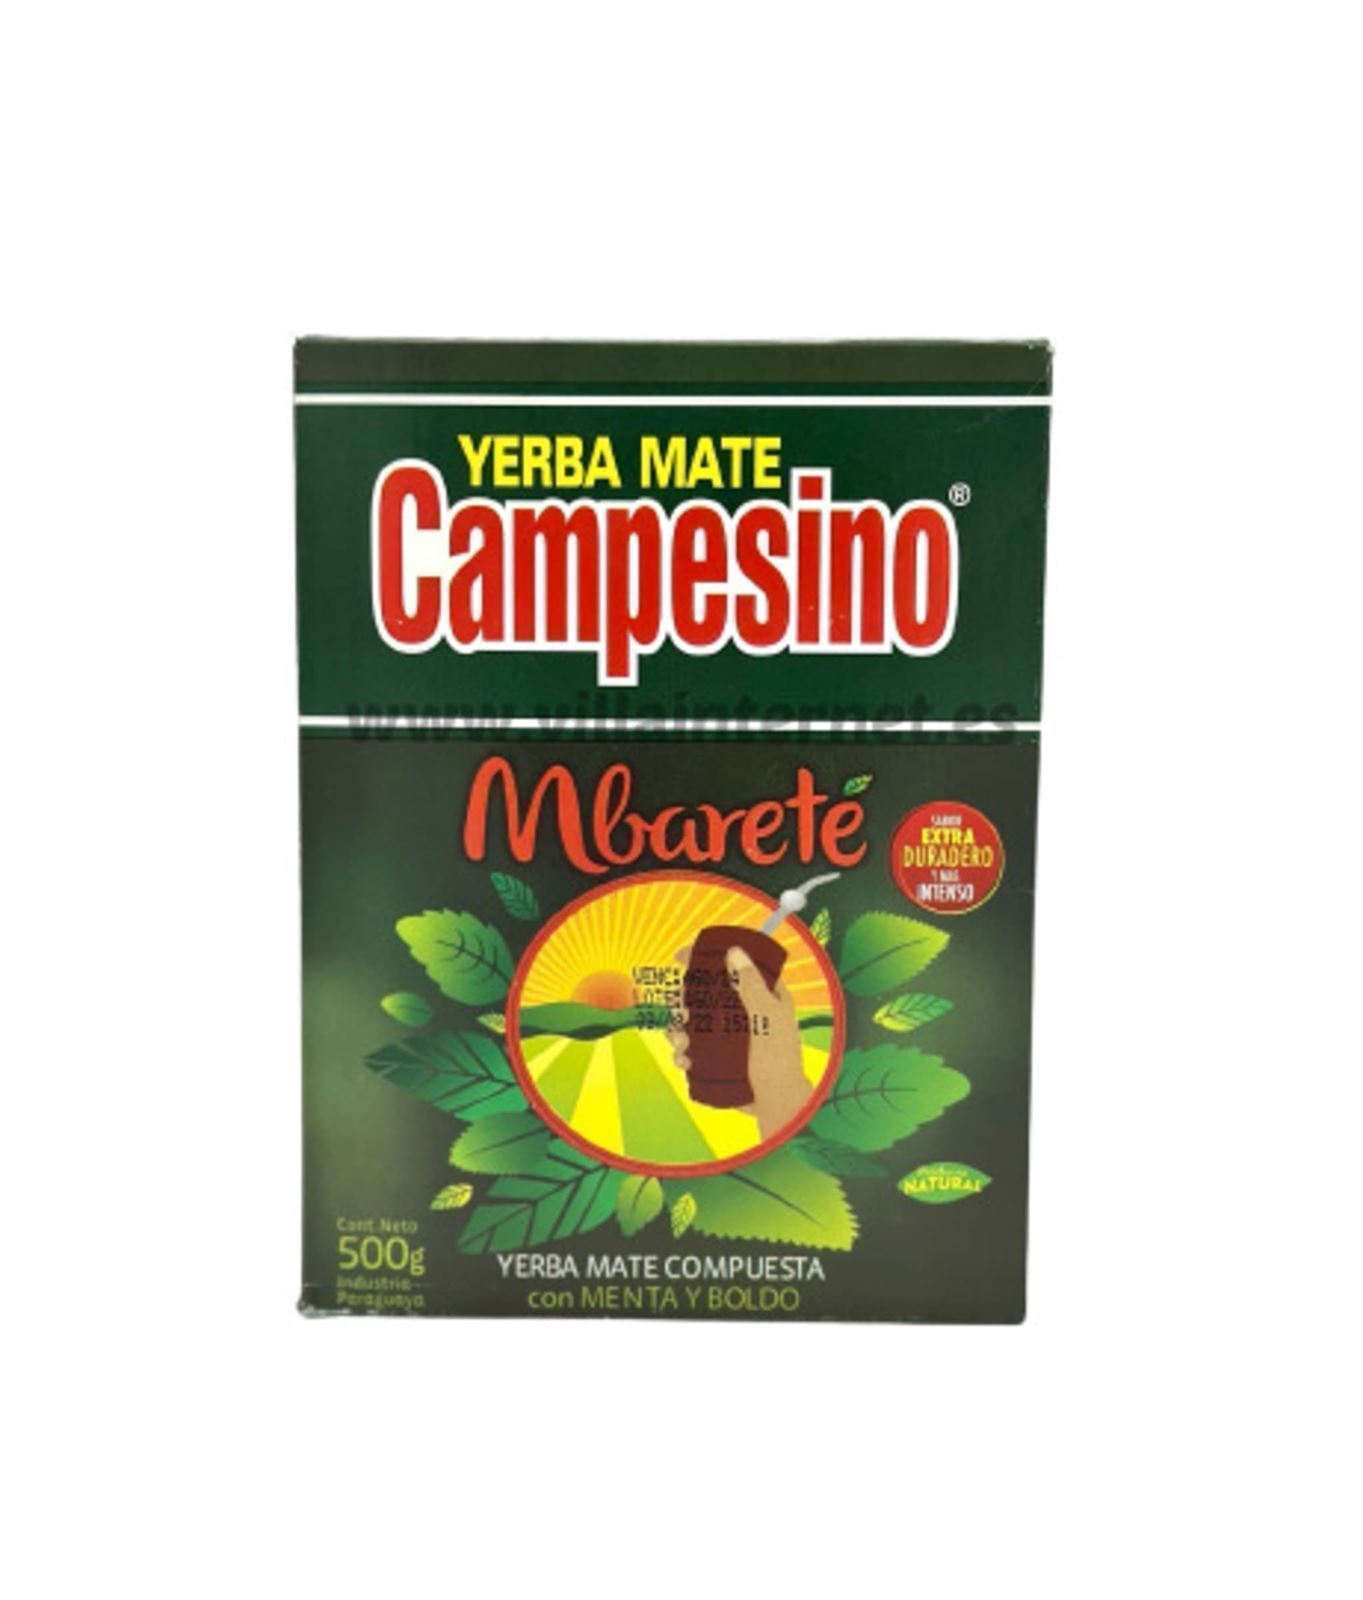 Yerba mate Campesino compuesta mbarete 500g - Imagen 1